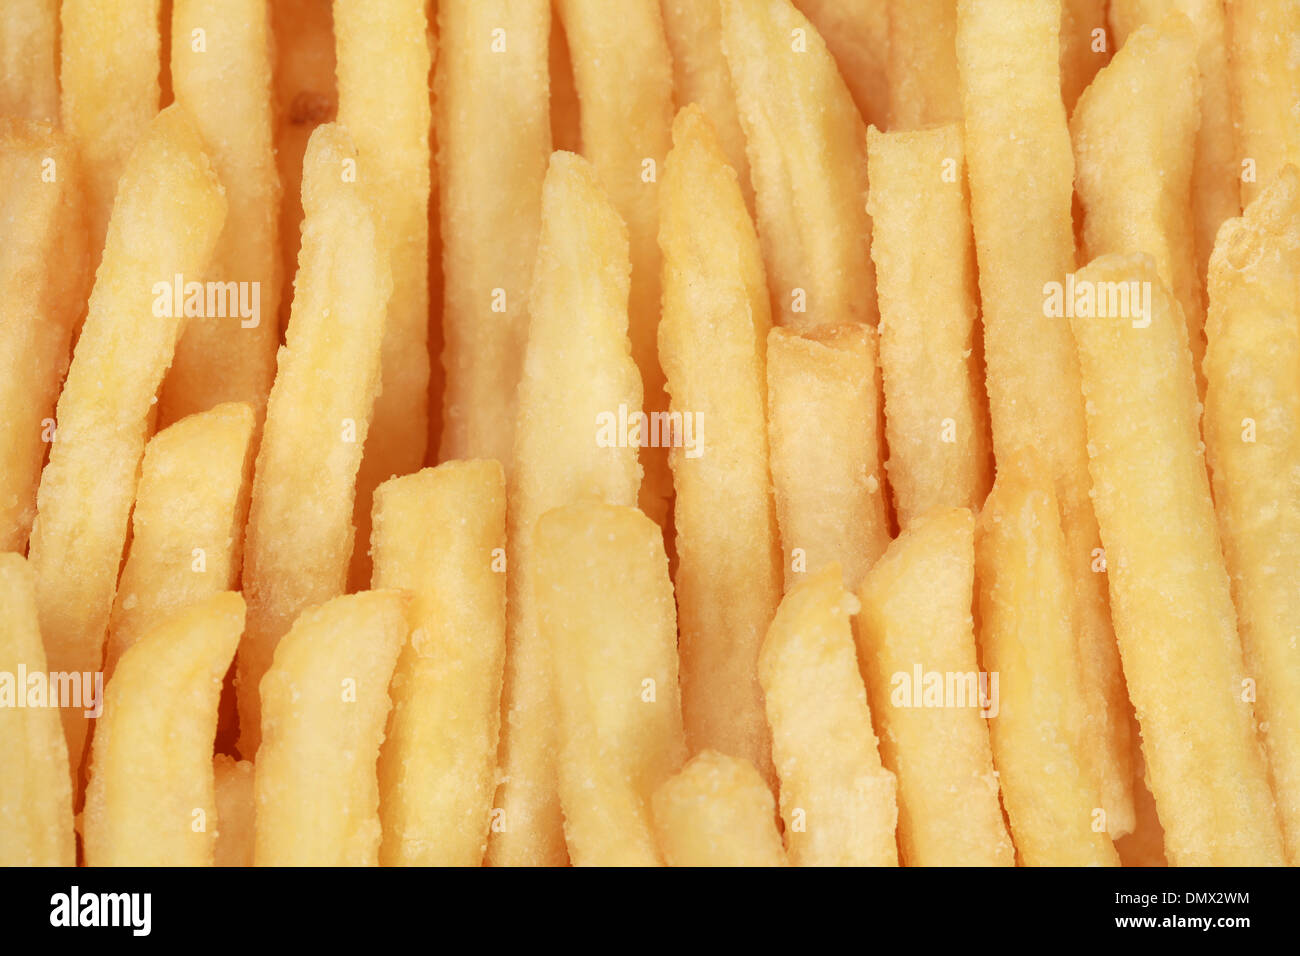 Pommes frites bildet einen Fast-Food-Hintergrund Stockfoto